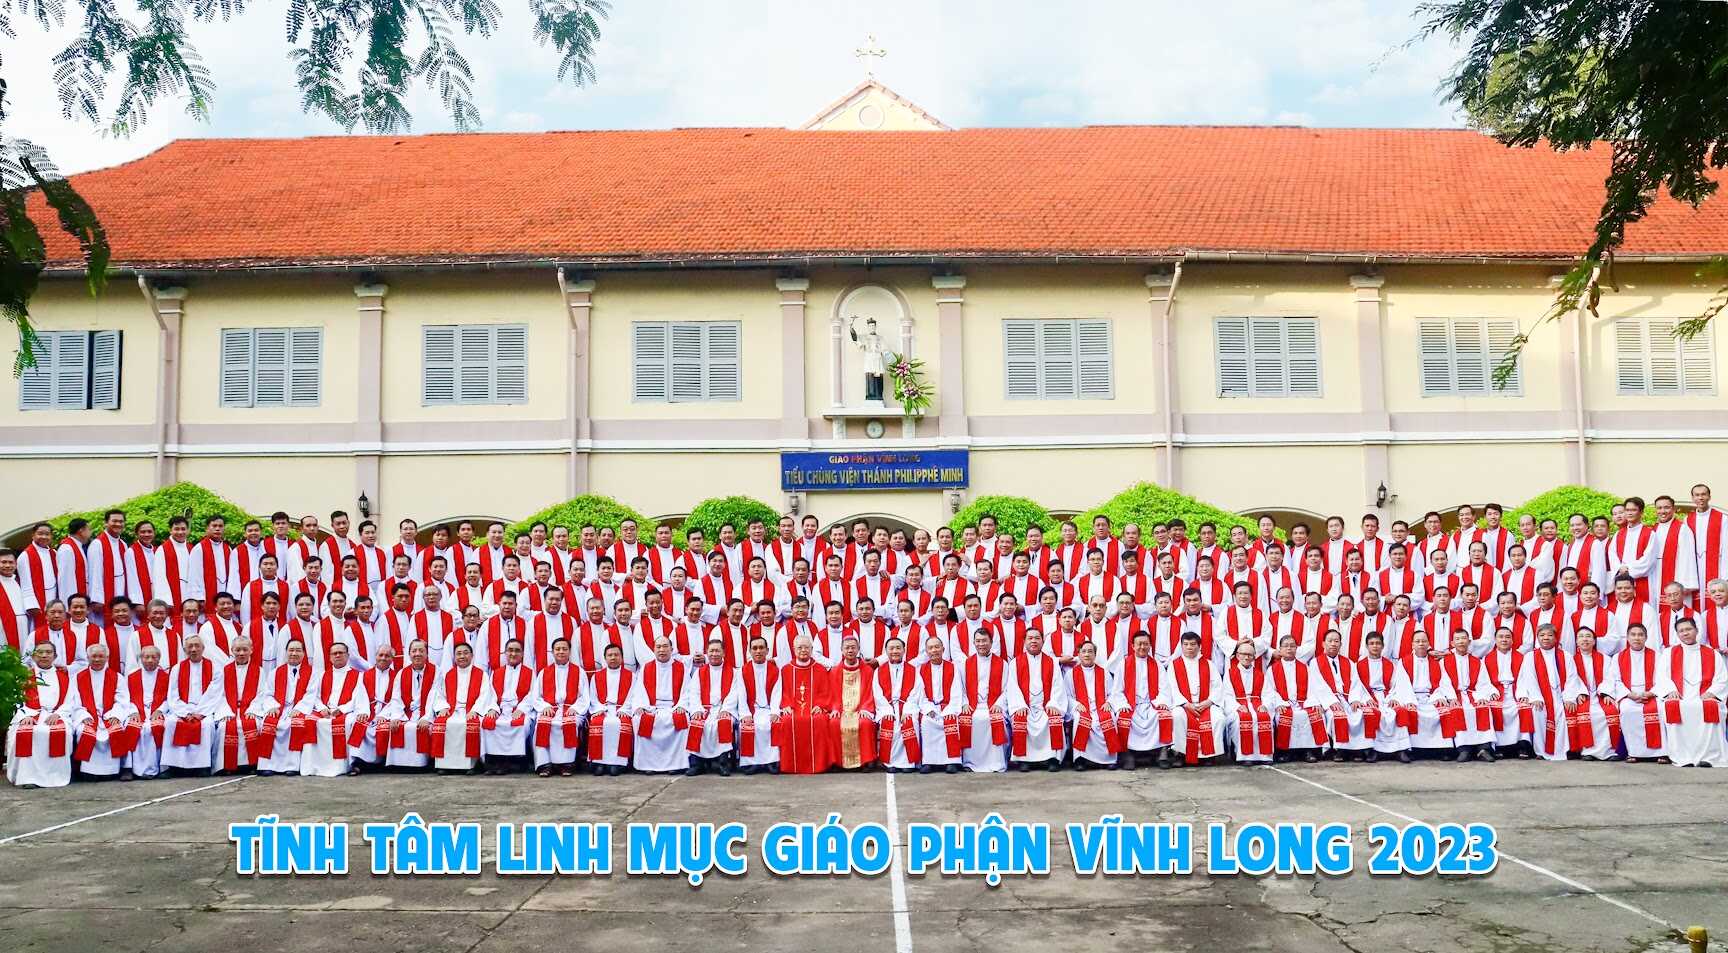 Hình ảnh linh mục đoàn Gp. Vĩnh Long 2023